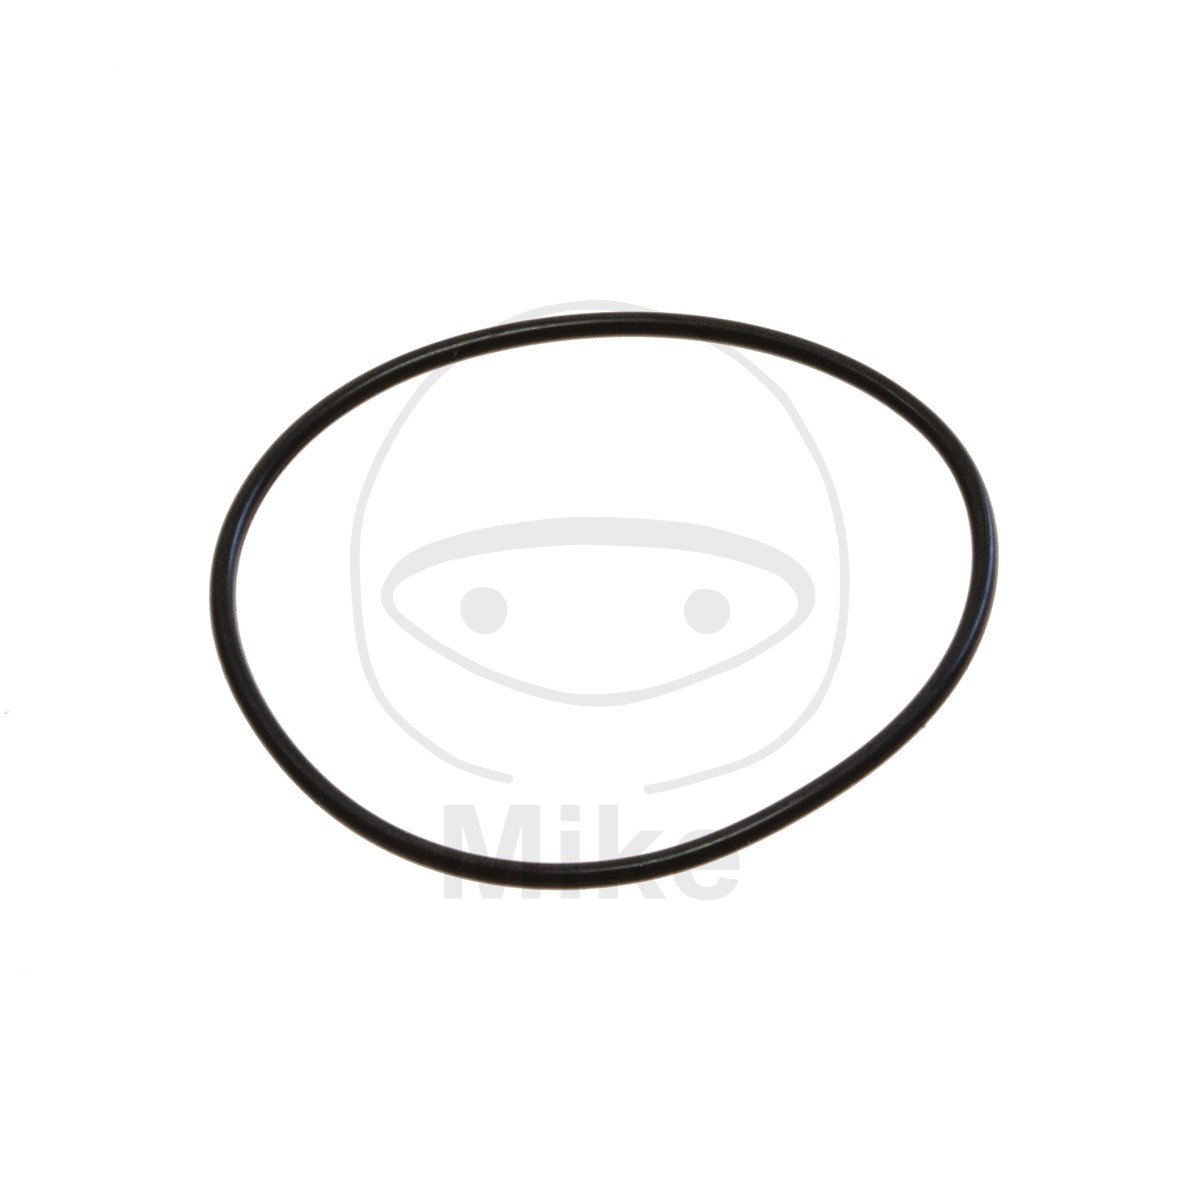 Obrázek produktu Těsnění hlavy válce ATHENA M752005400004 O-kroužek 2X54 mm